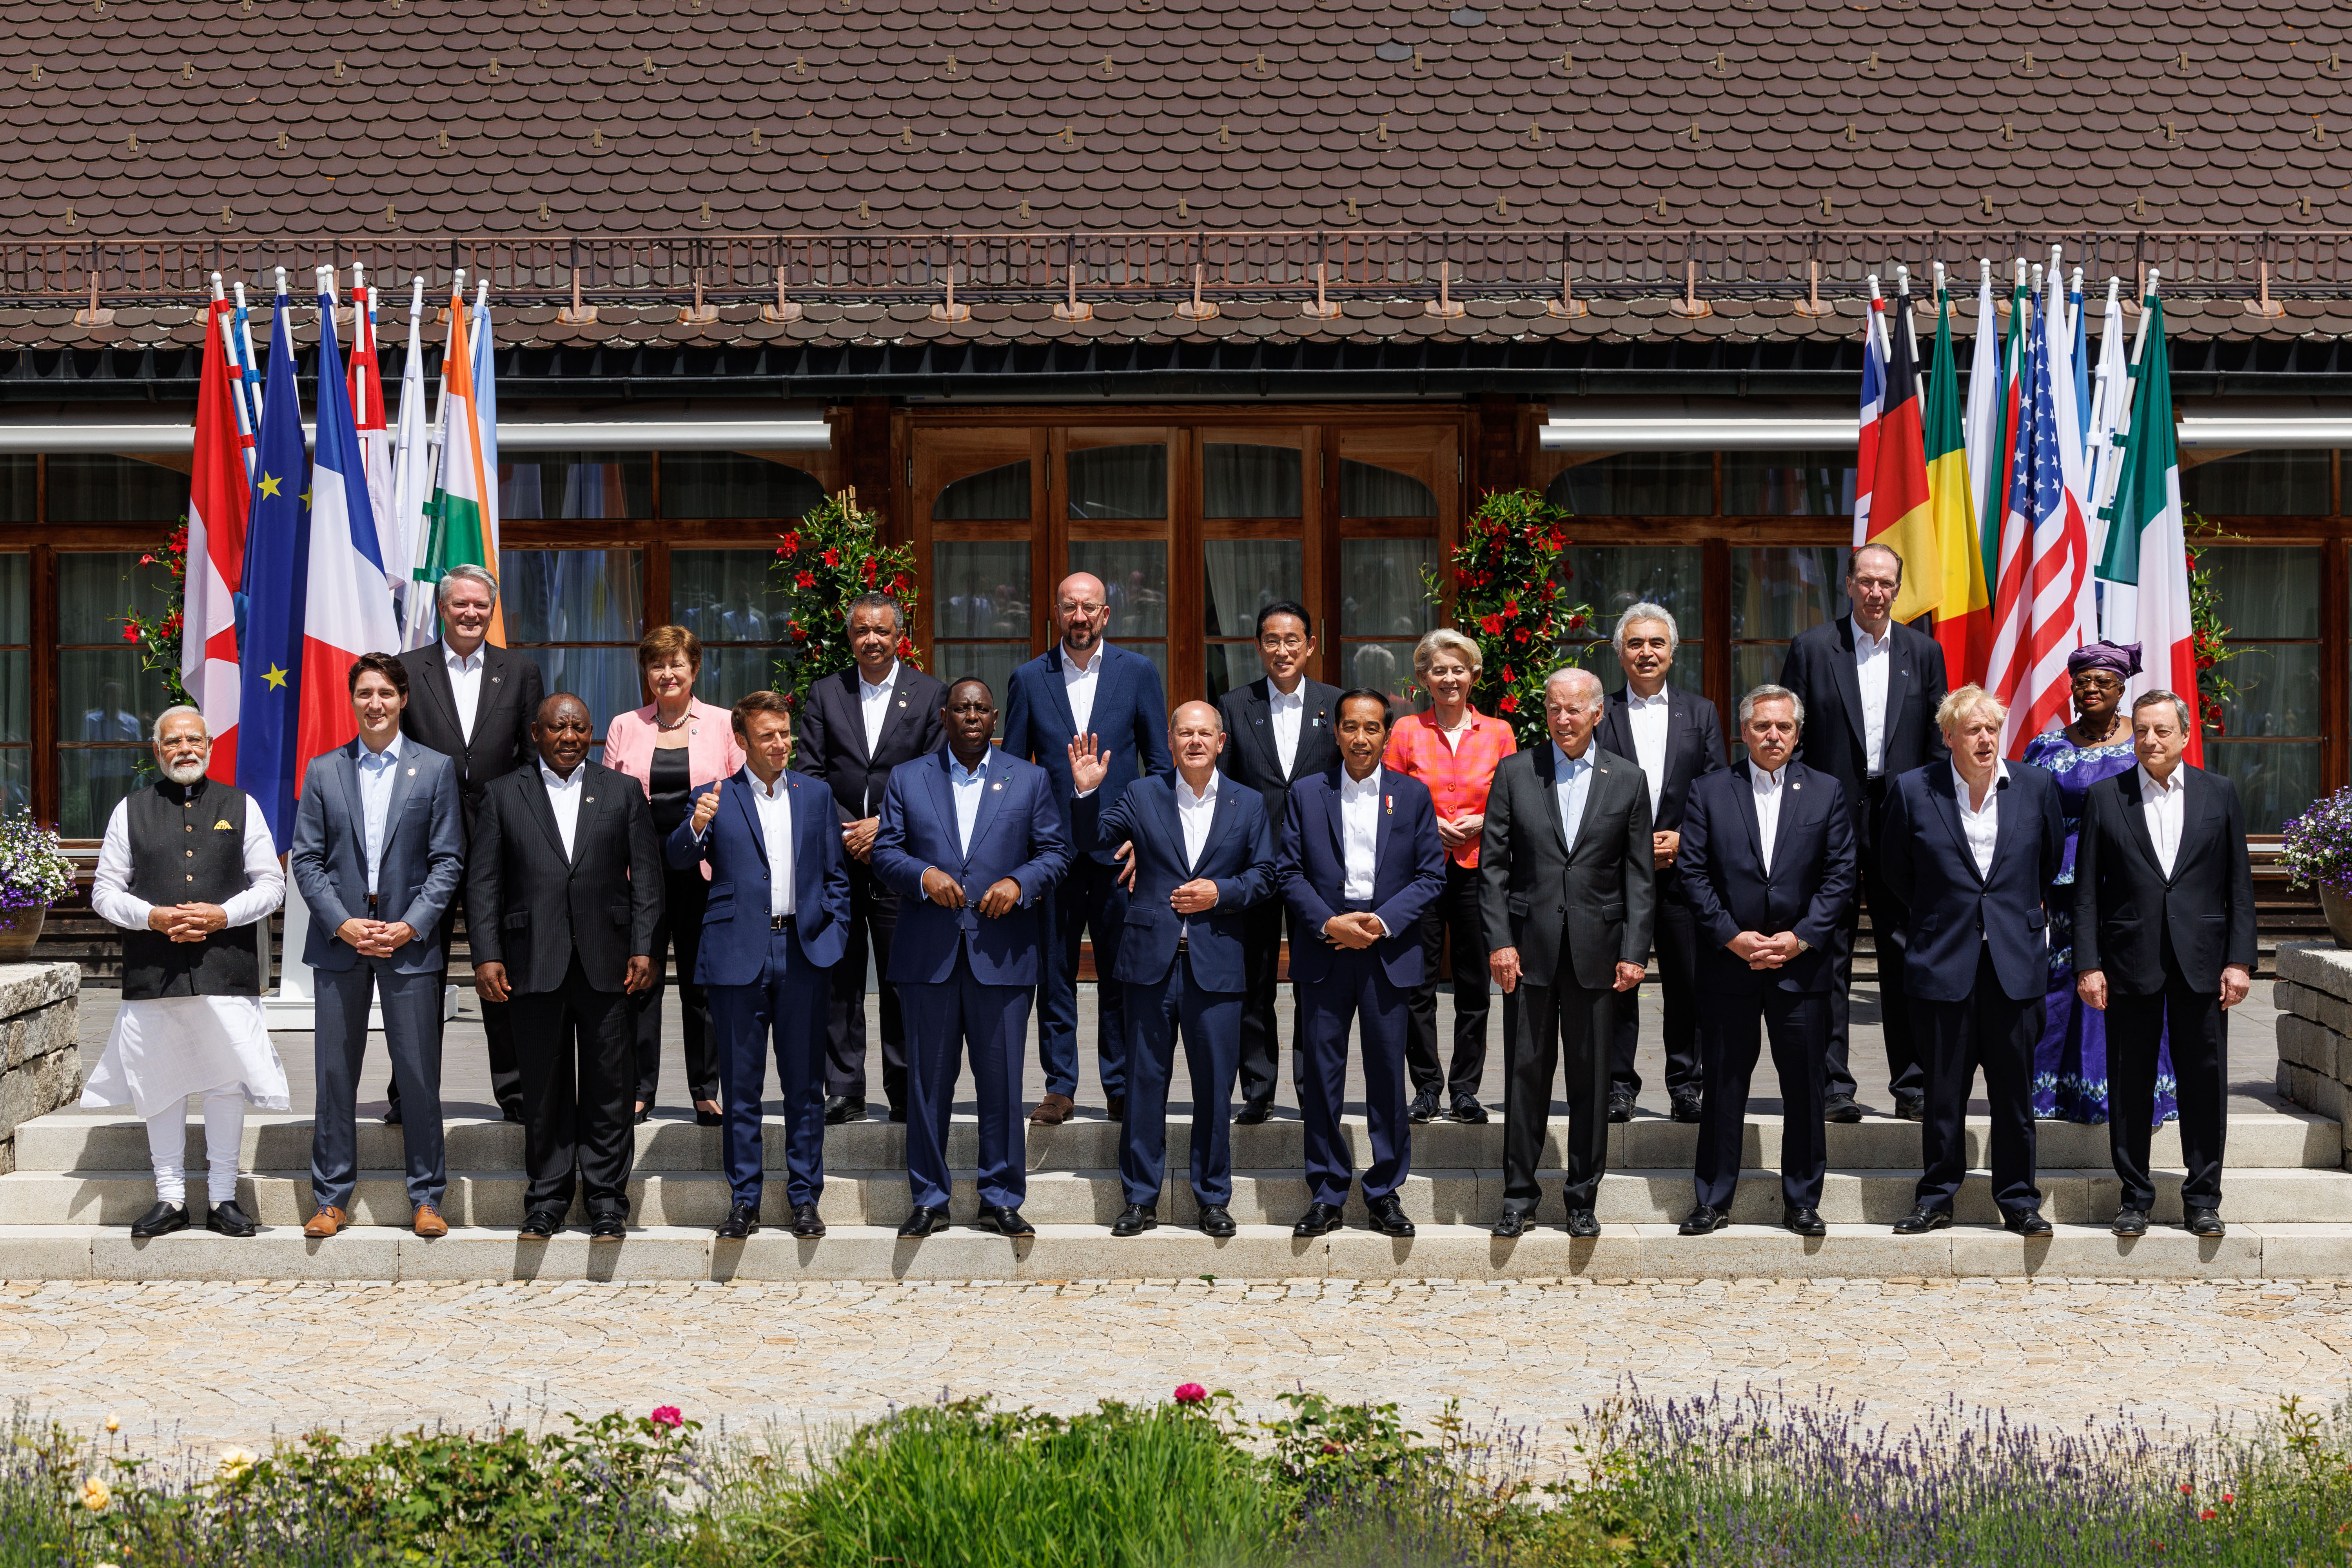 Gruppenfoto der G7 Staats- und Regierungschefs mit Vertretern der Partnerländer und Internationaler Organisationen.